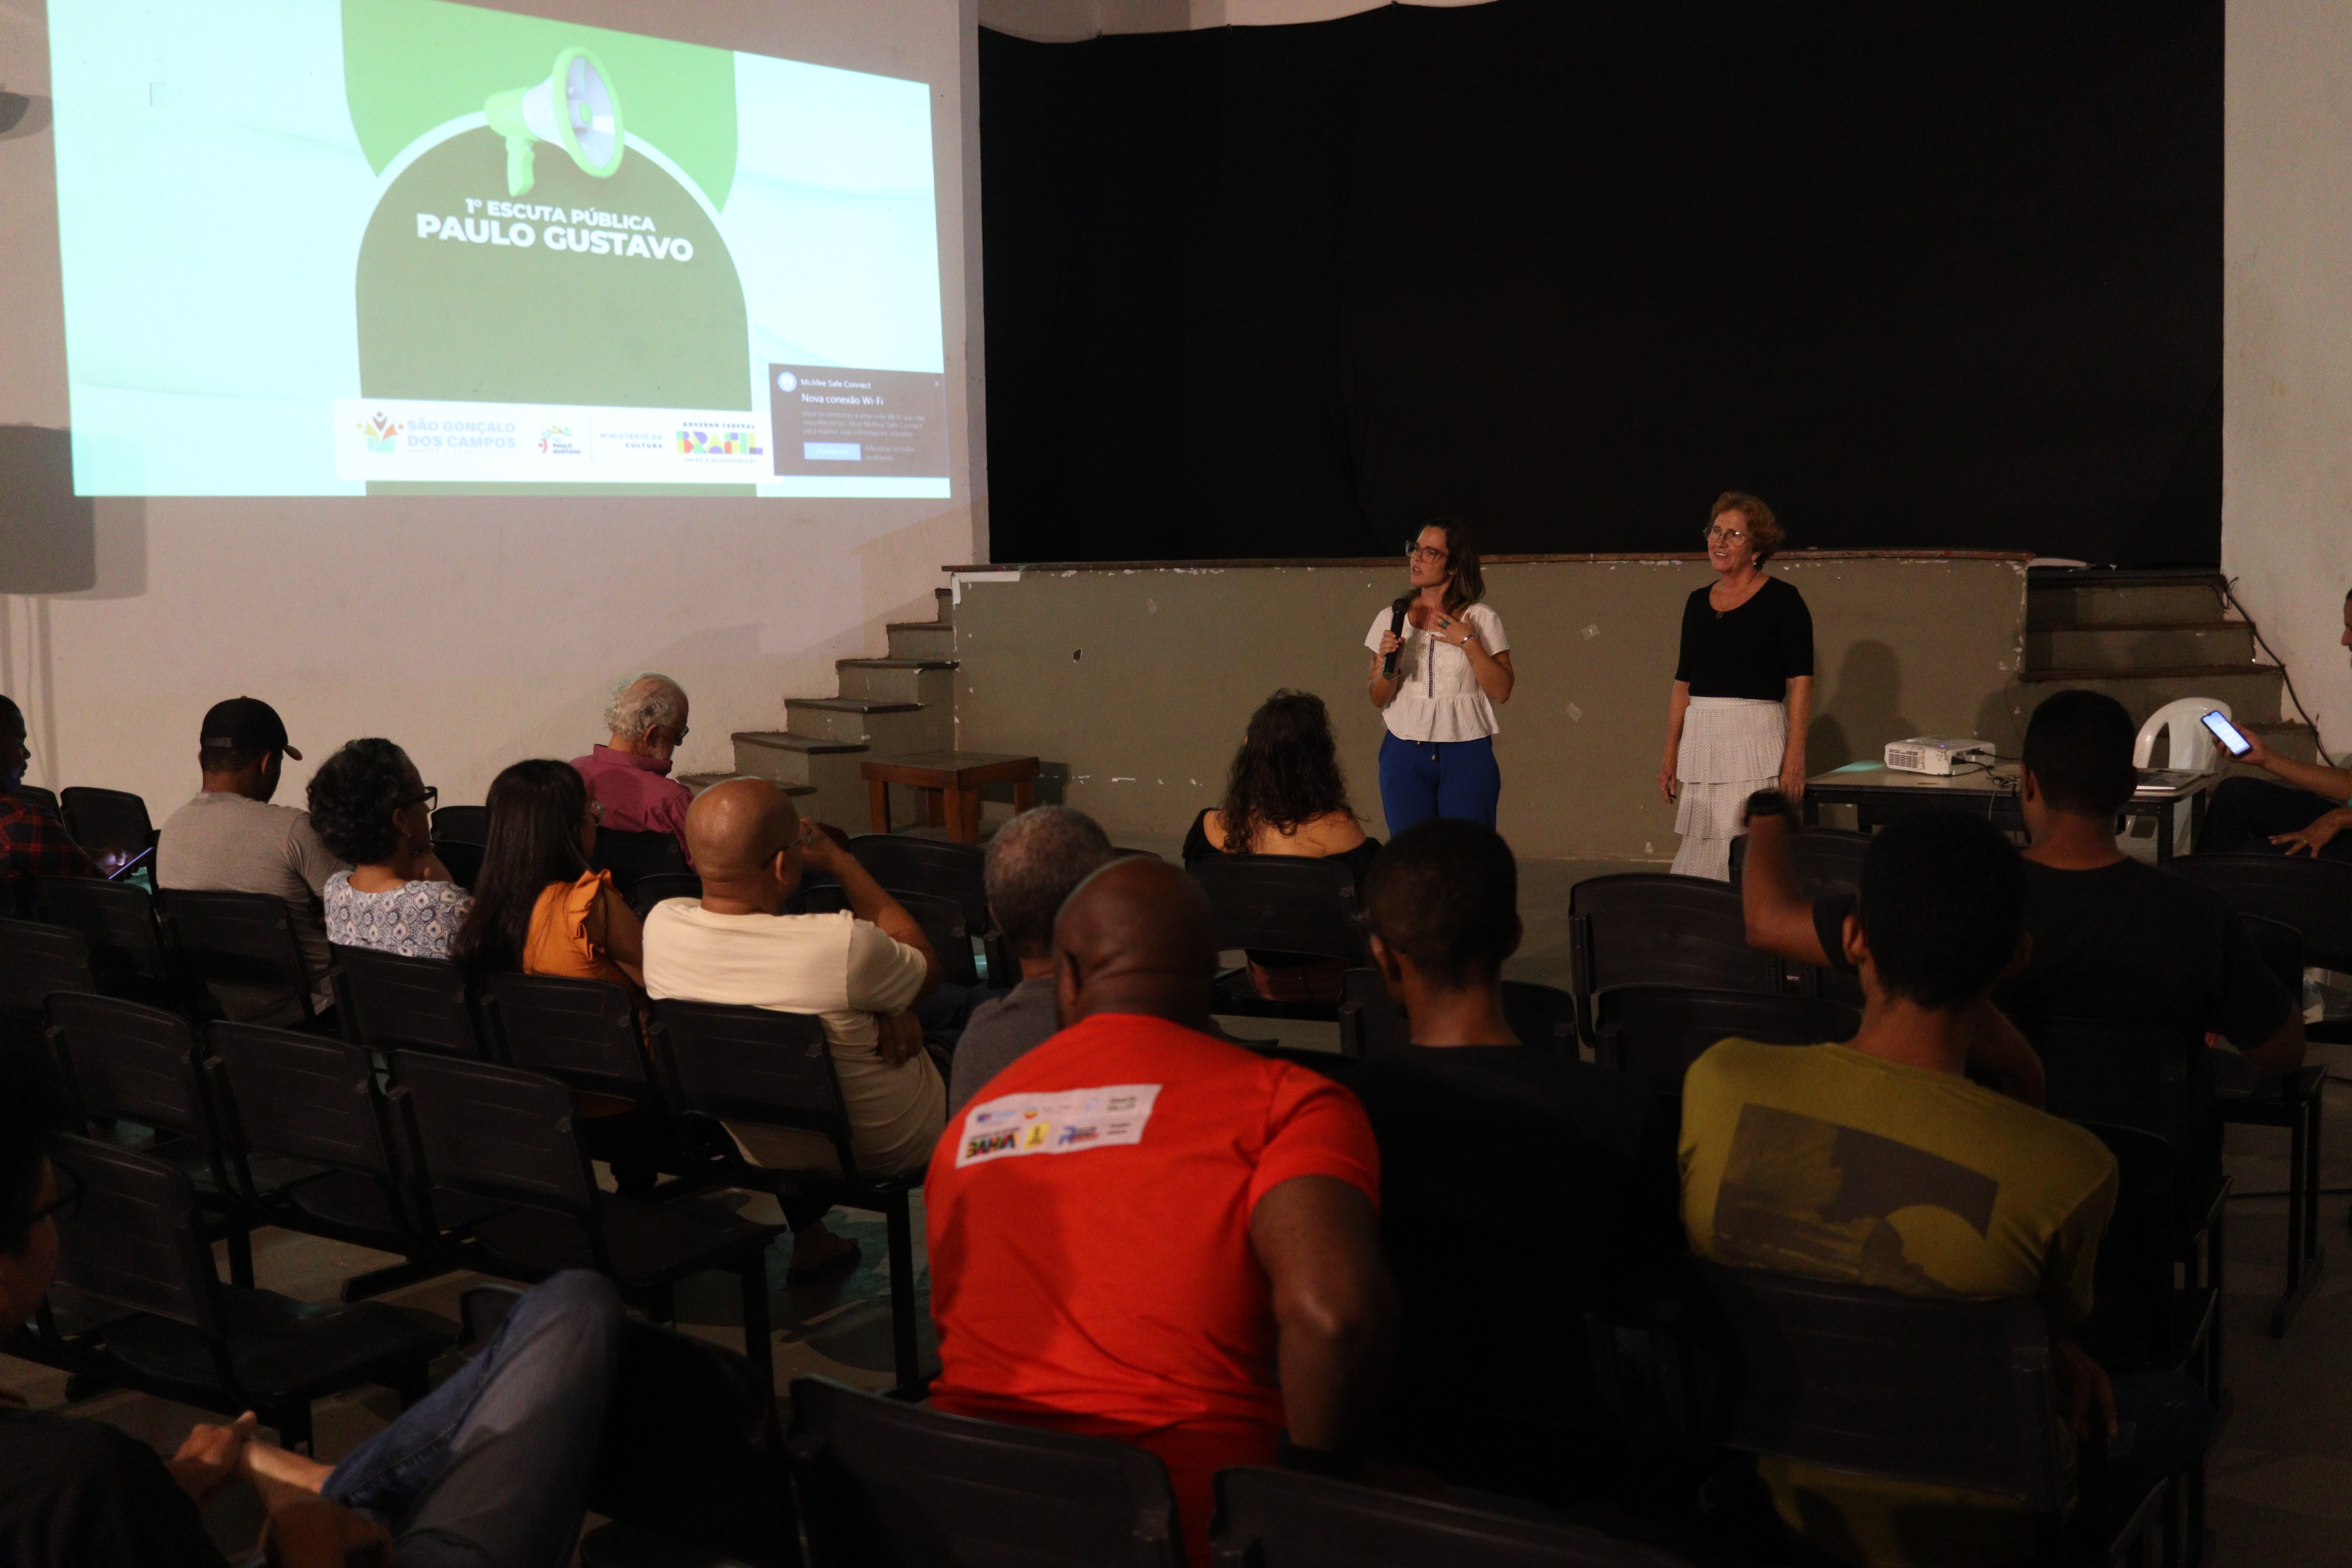 Prefeitura de São Gonçalo promove oficinas de capacitação voltadas para projetos culturais da Lei Paulo Gustavo